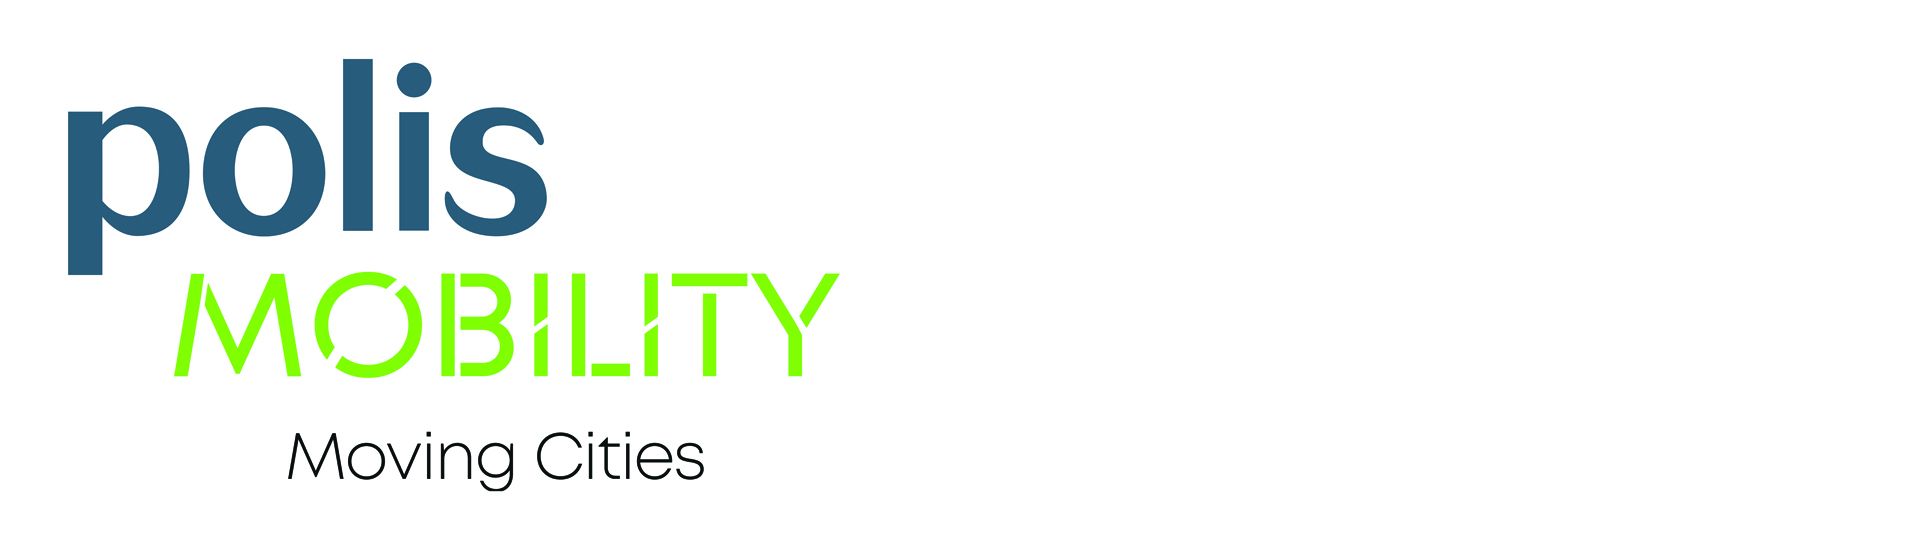 polisMOBILITY - Moving Cities - Logo